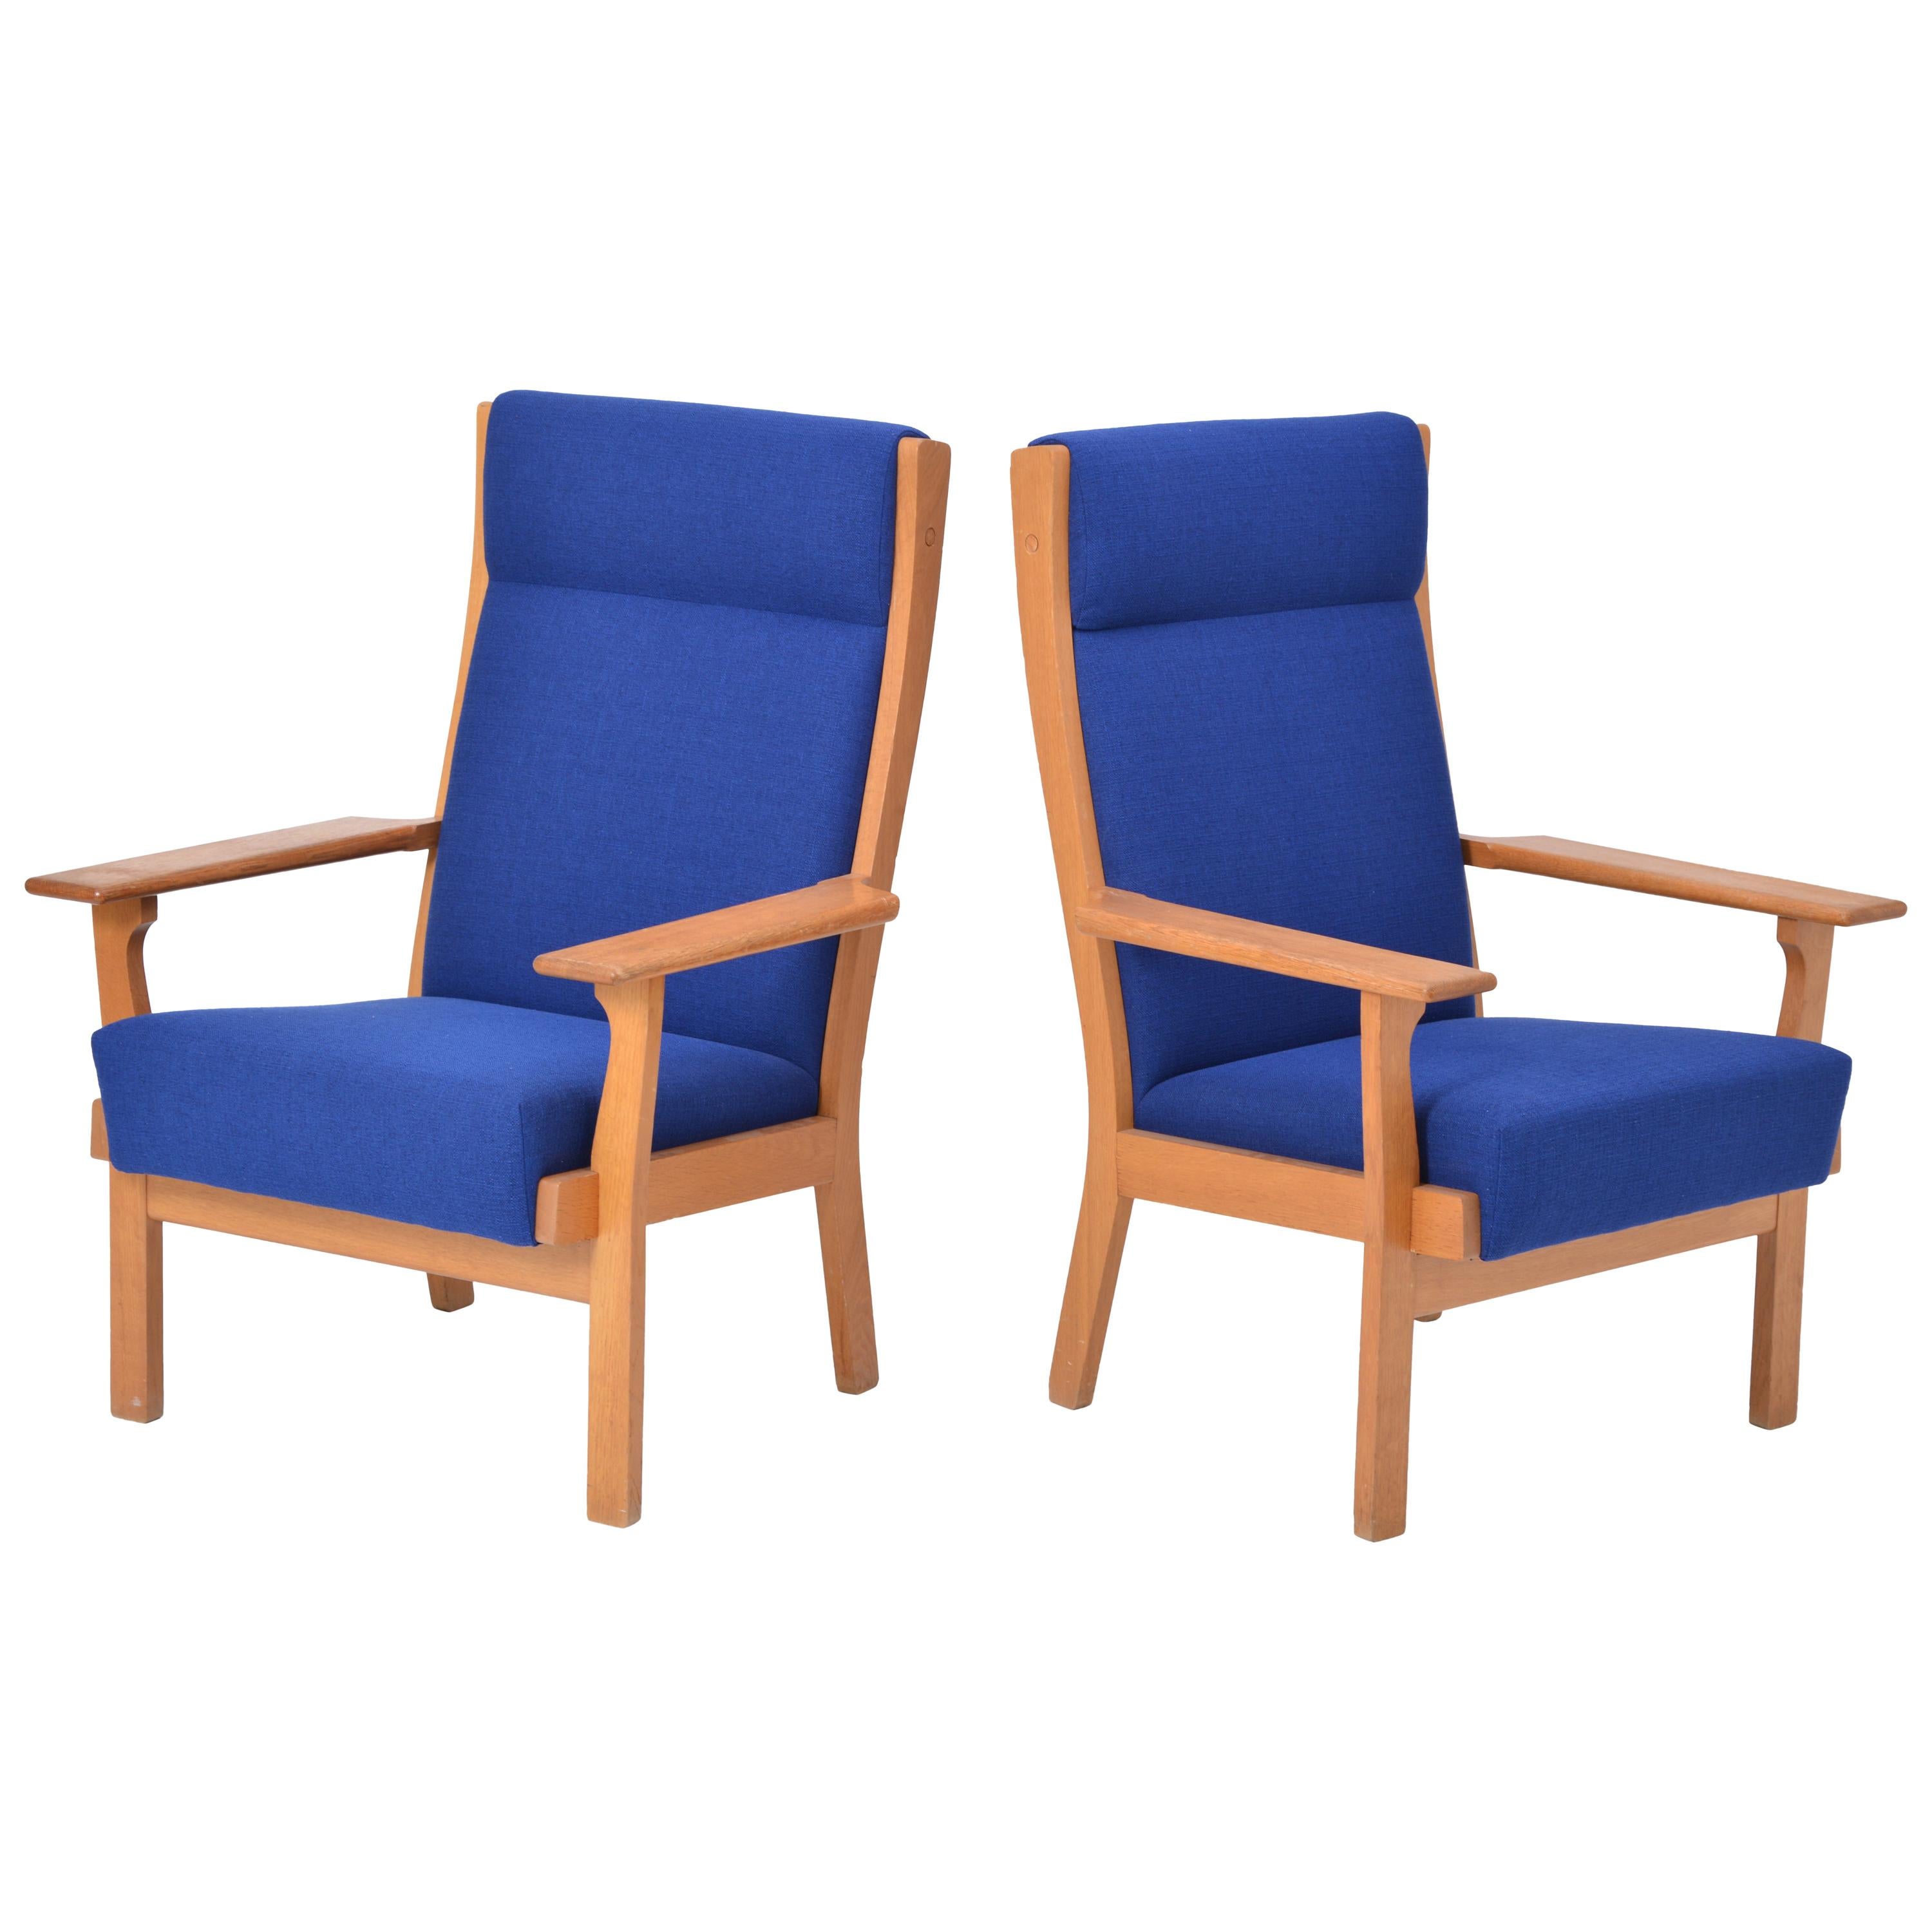 Satz von zwei dänischen Stühlen der Jahrhundertmitte GE 181 a von Hans Wegner für GETAMA

Dieses Sesselpaar (Modell GE 181 A) wurde von Hans Wegner entworfen und von der dänischen Firma GETAMA in hervorragender Handwerkskunst hergestellt. Die Stühle